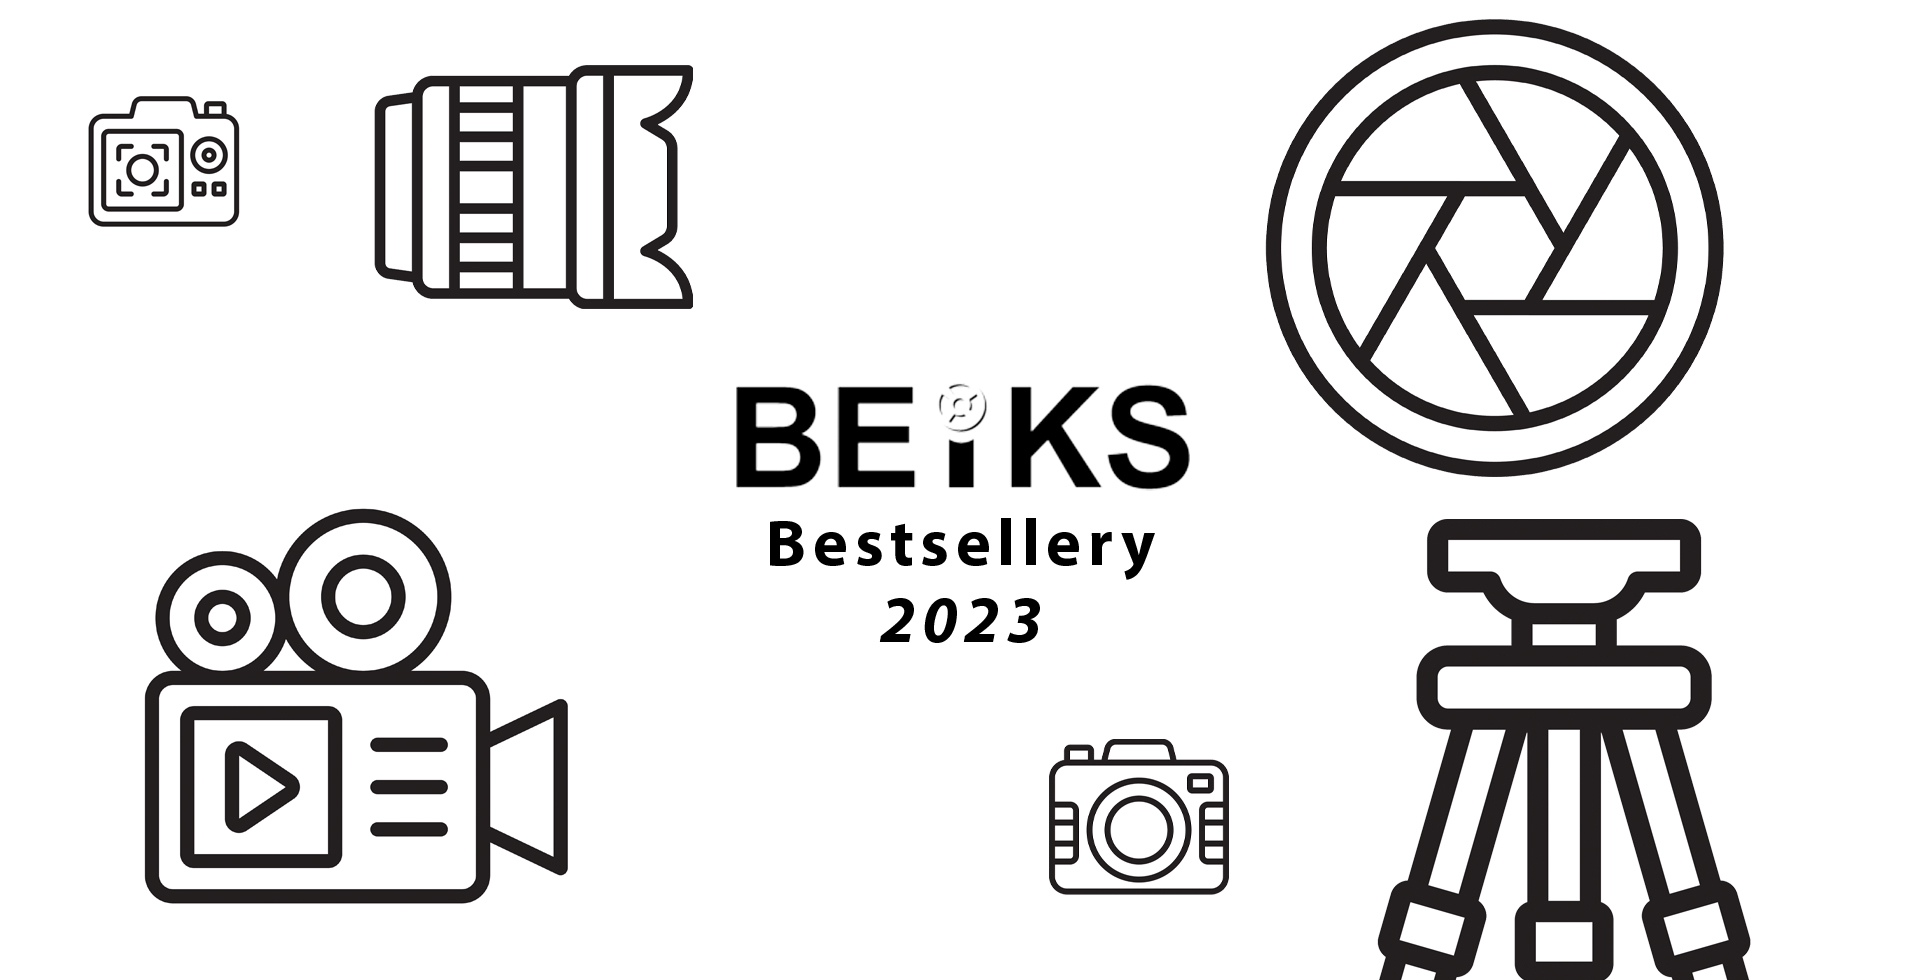 Najlepiej sprzedające się produkty fotograficzne w 2023 roku: aparaty i obiektywy.